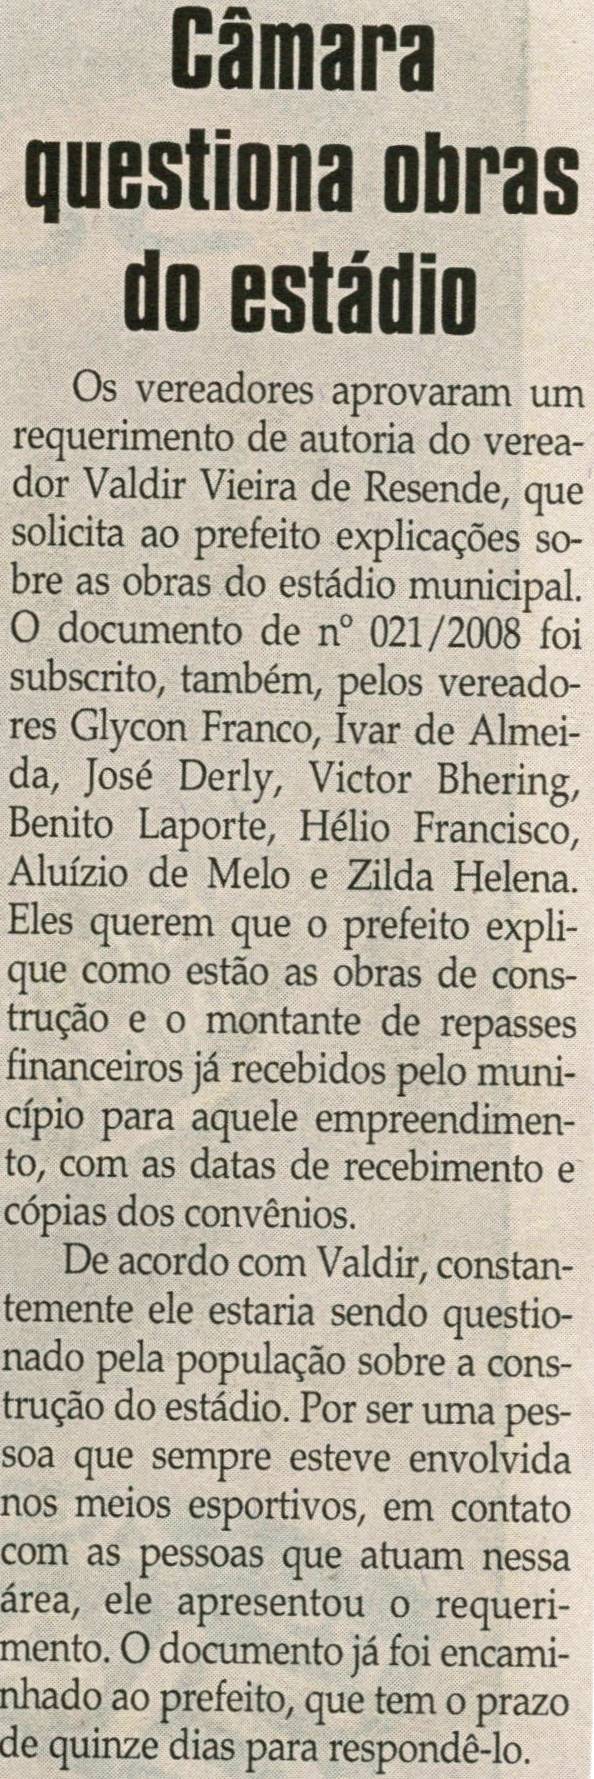 Câmara questiona obras do estádio. Jornal Correio da Cidade,  31 mai. 2008, p. 04.